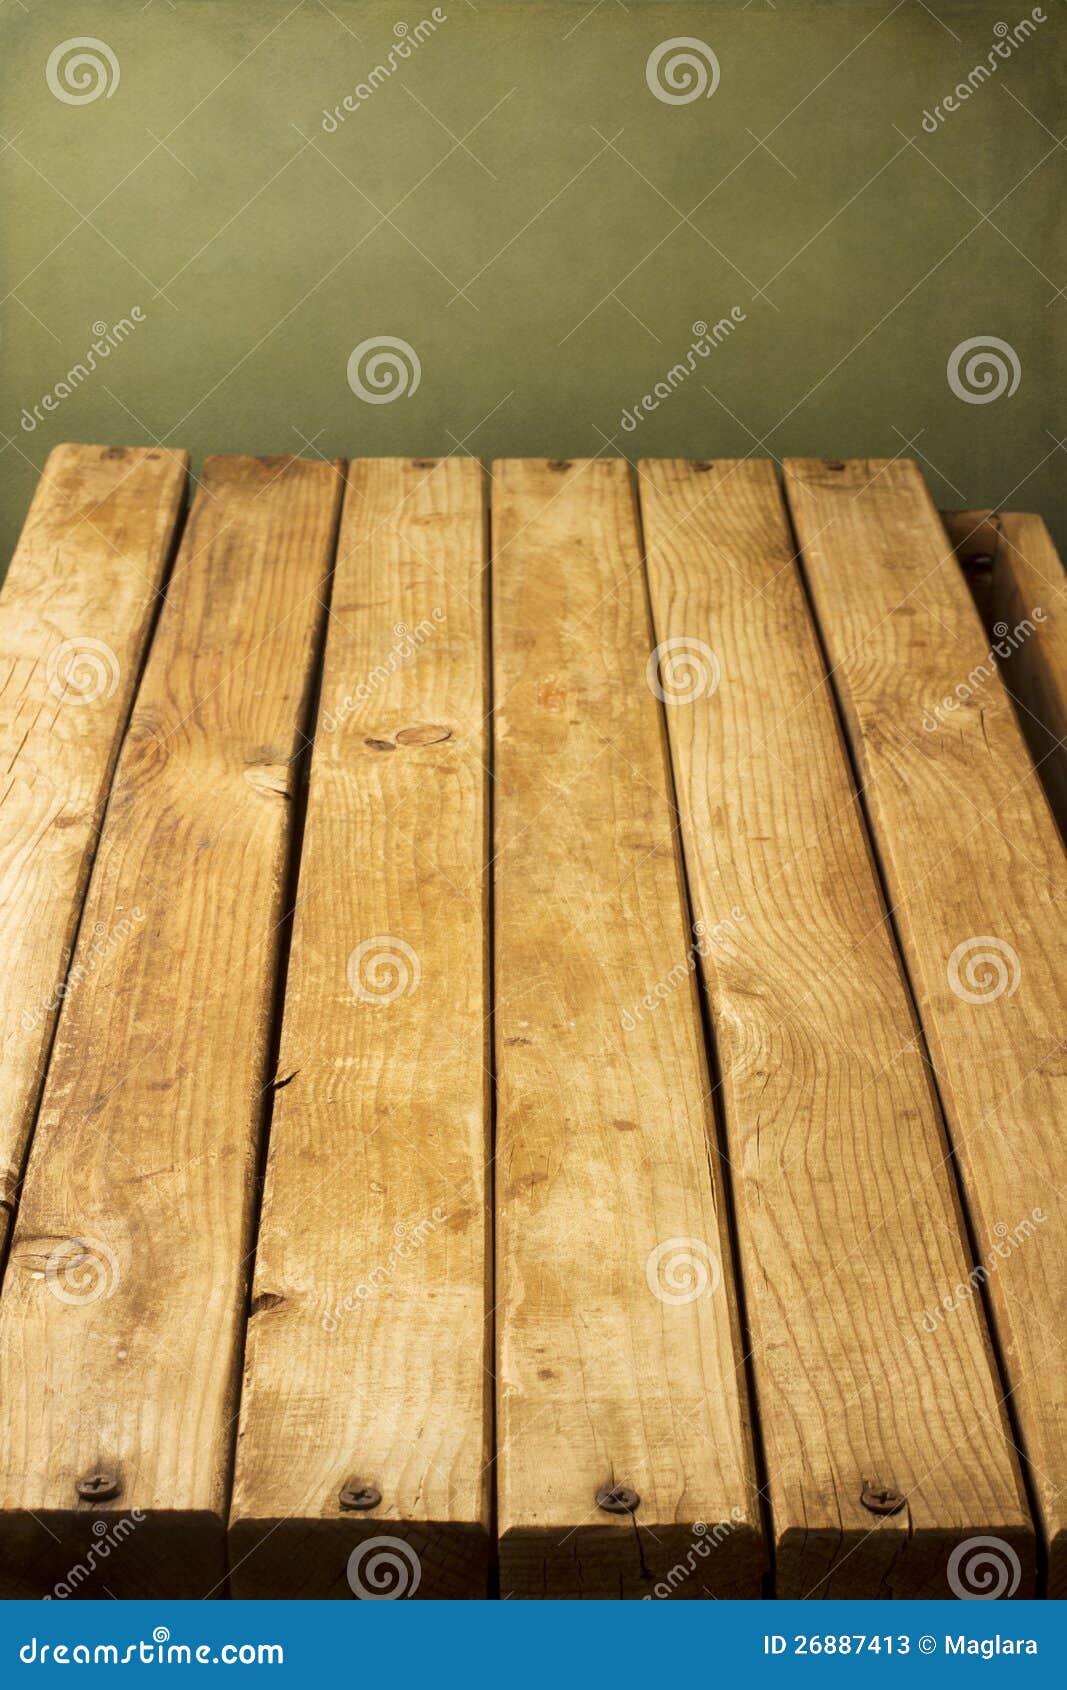 wooden deck tabletop